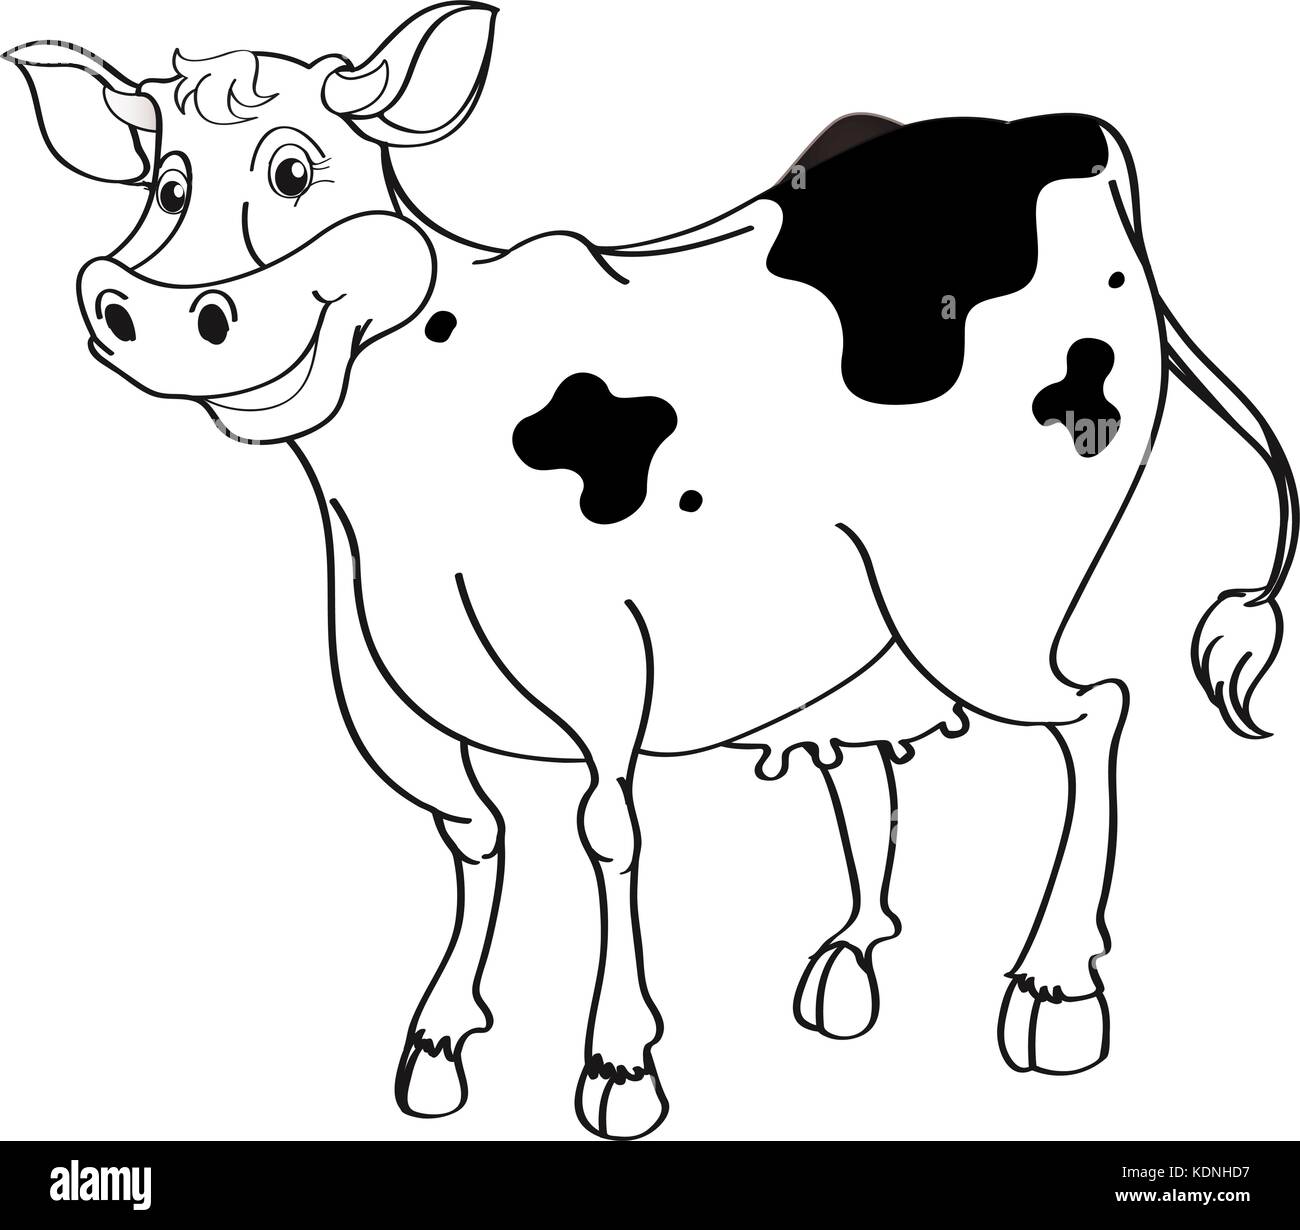 Корова раскраска пятнышки